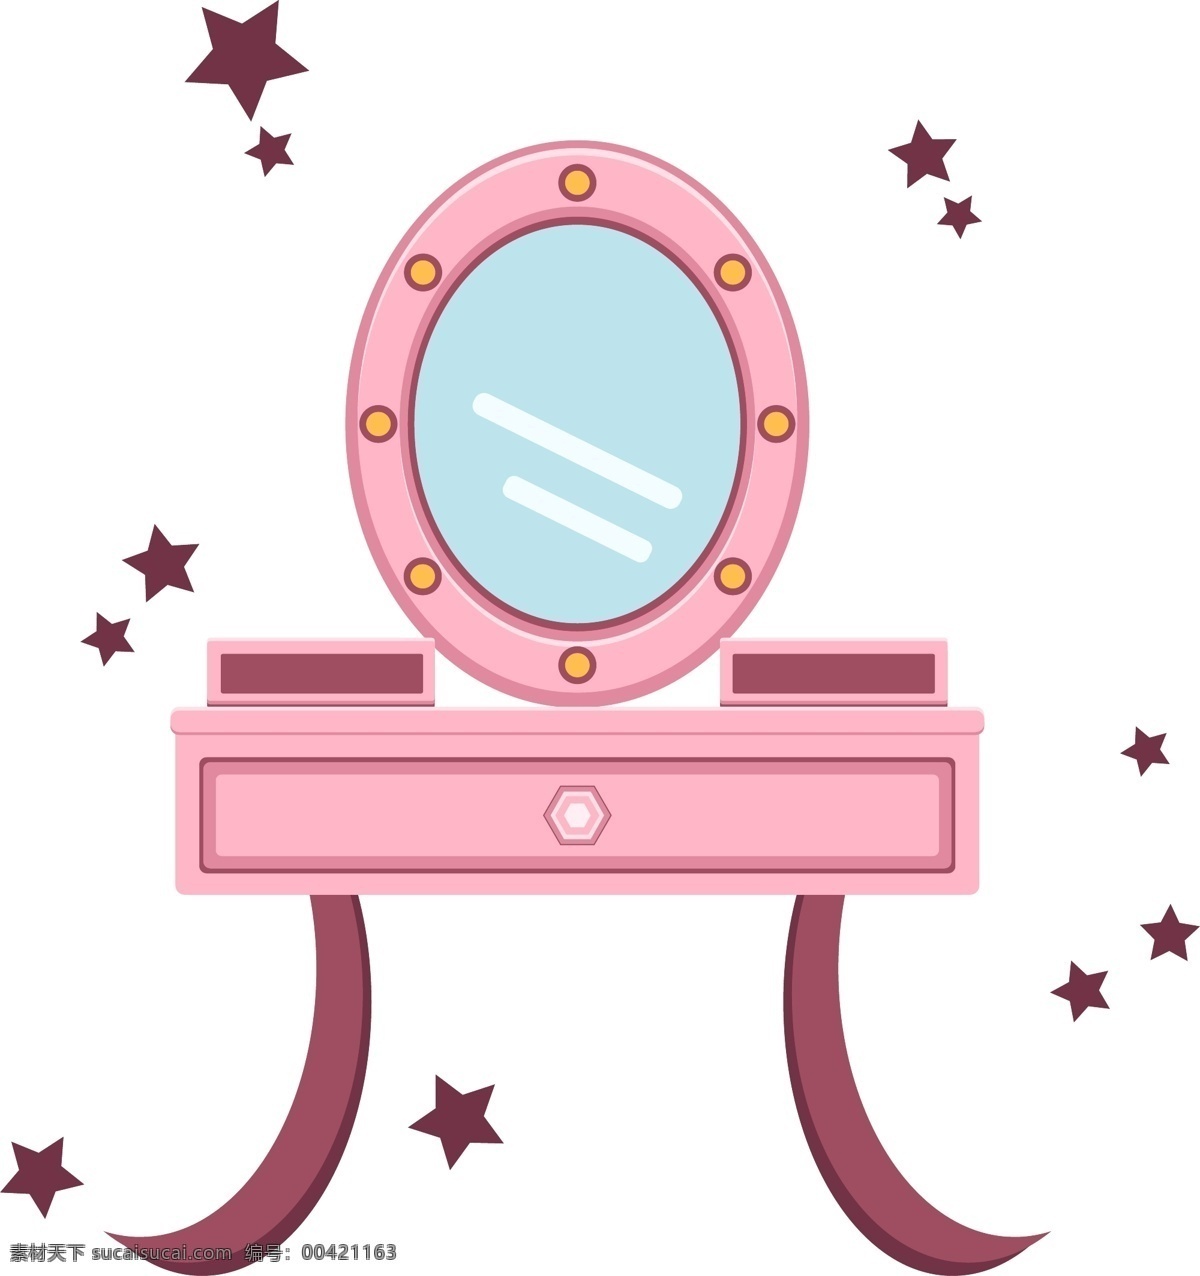 生活用品 少女 粉红 梳妆台 卡通可爱 公主风 家具